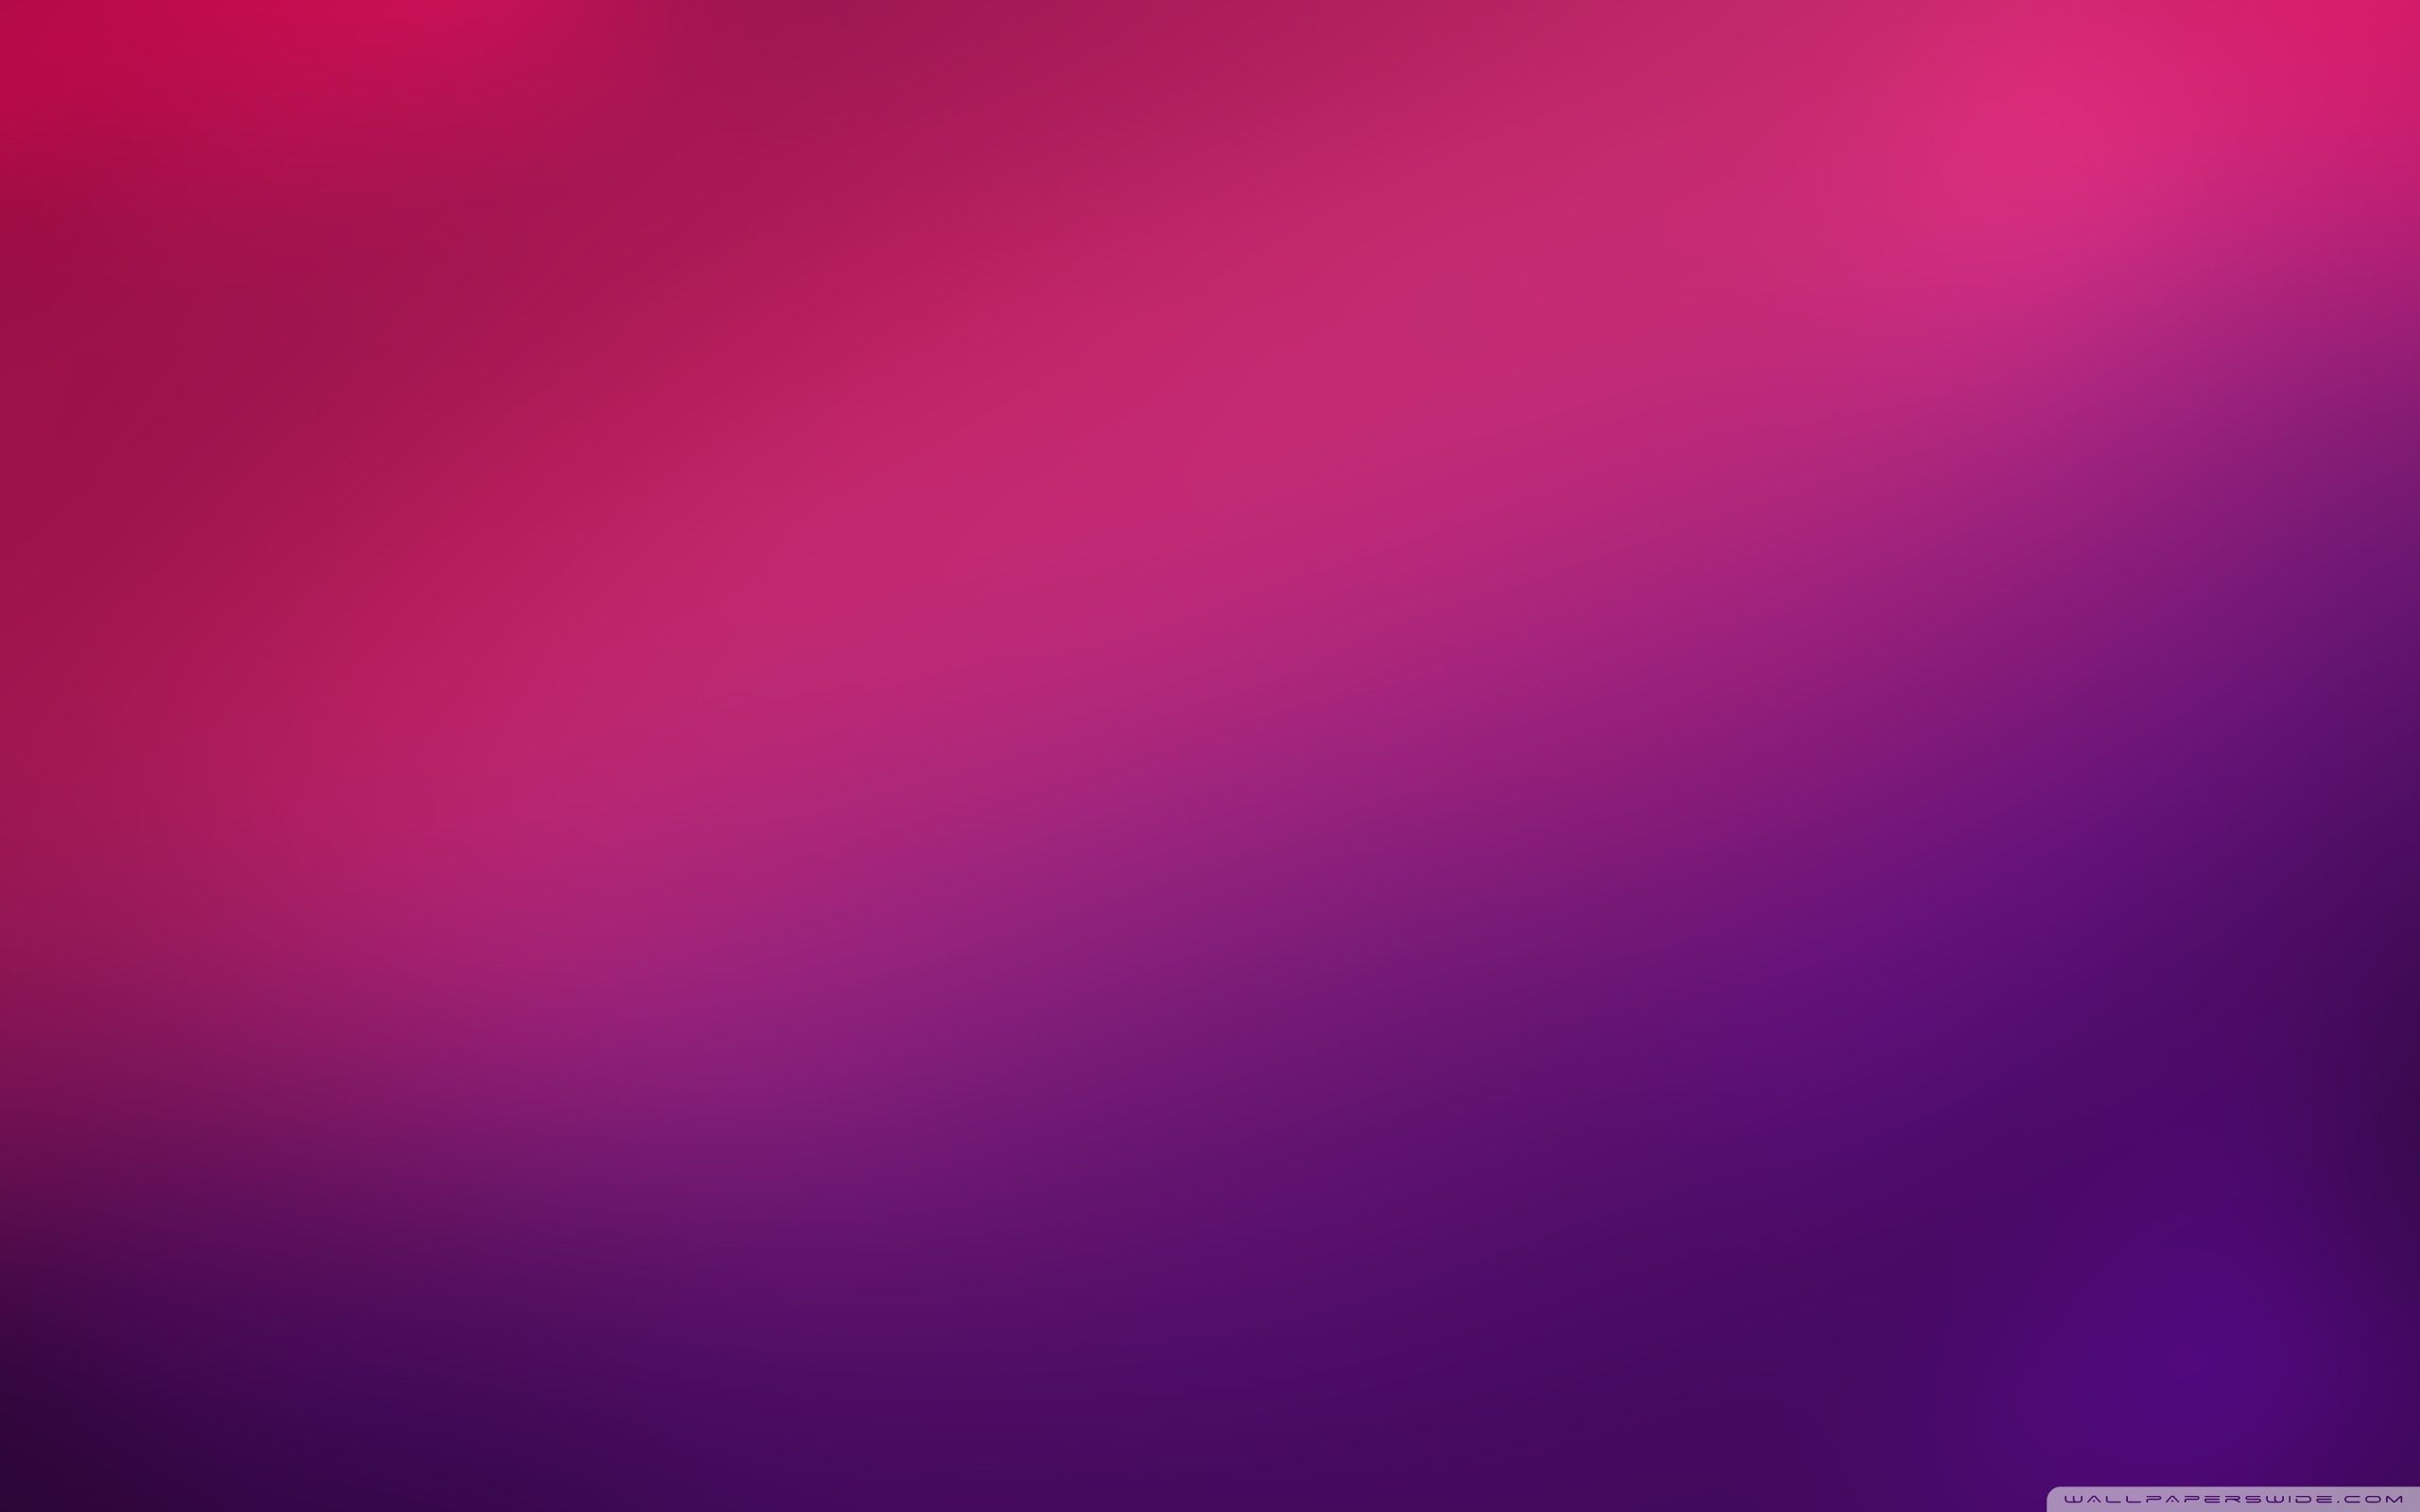 Minimalist Purple Ultra HD Desktop Background Wallpaper for 4K UHD